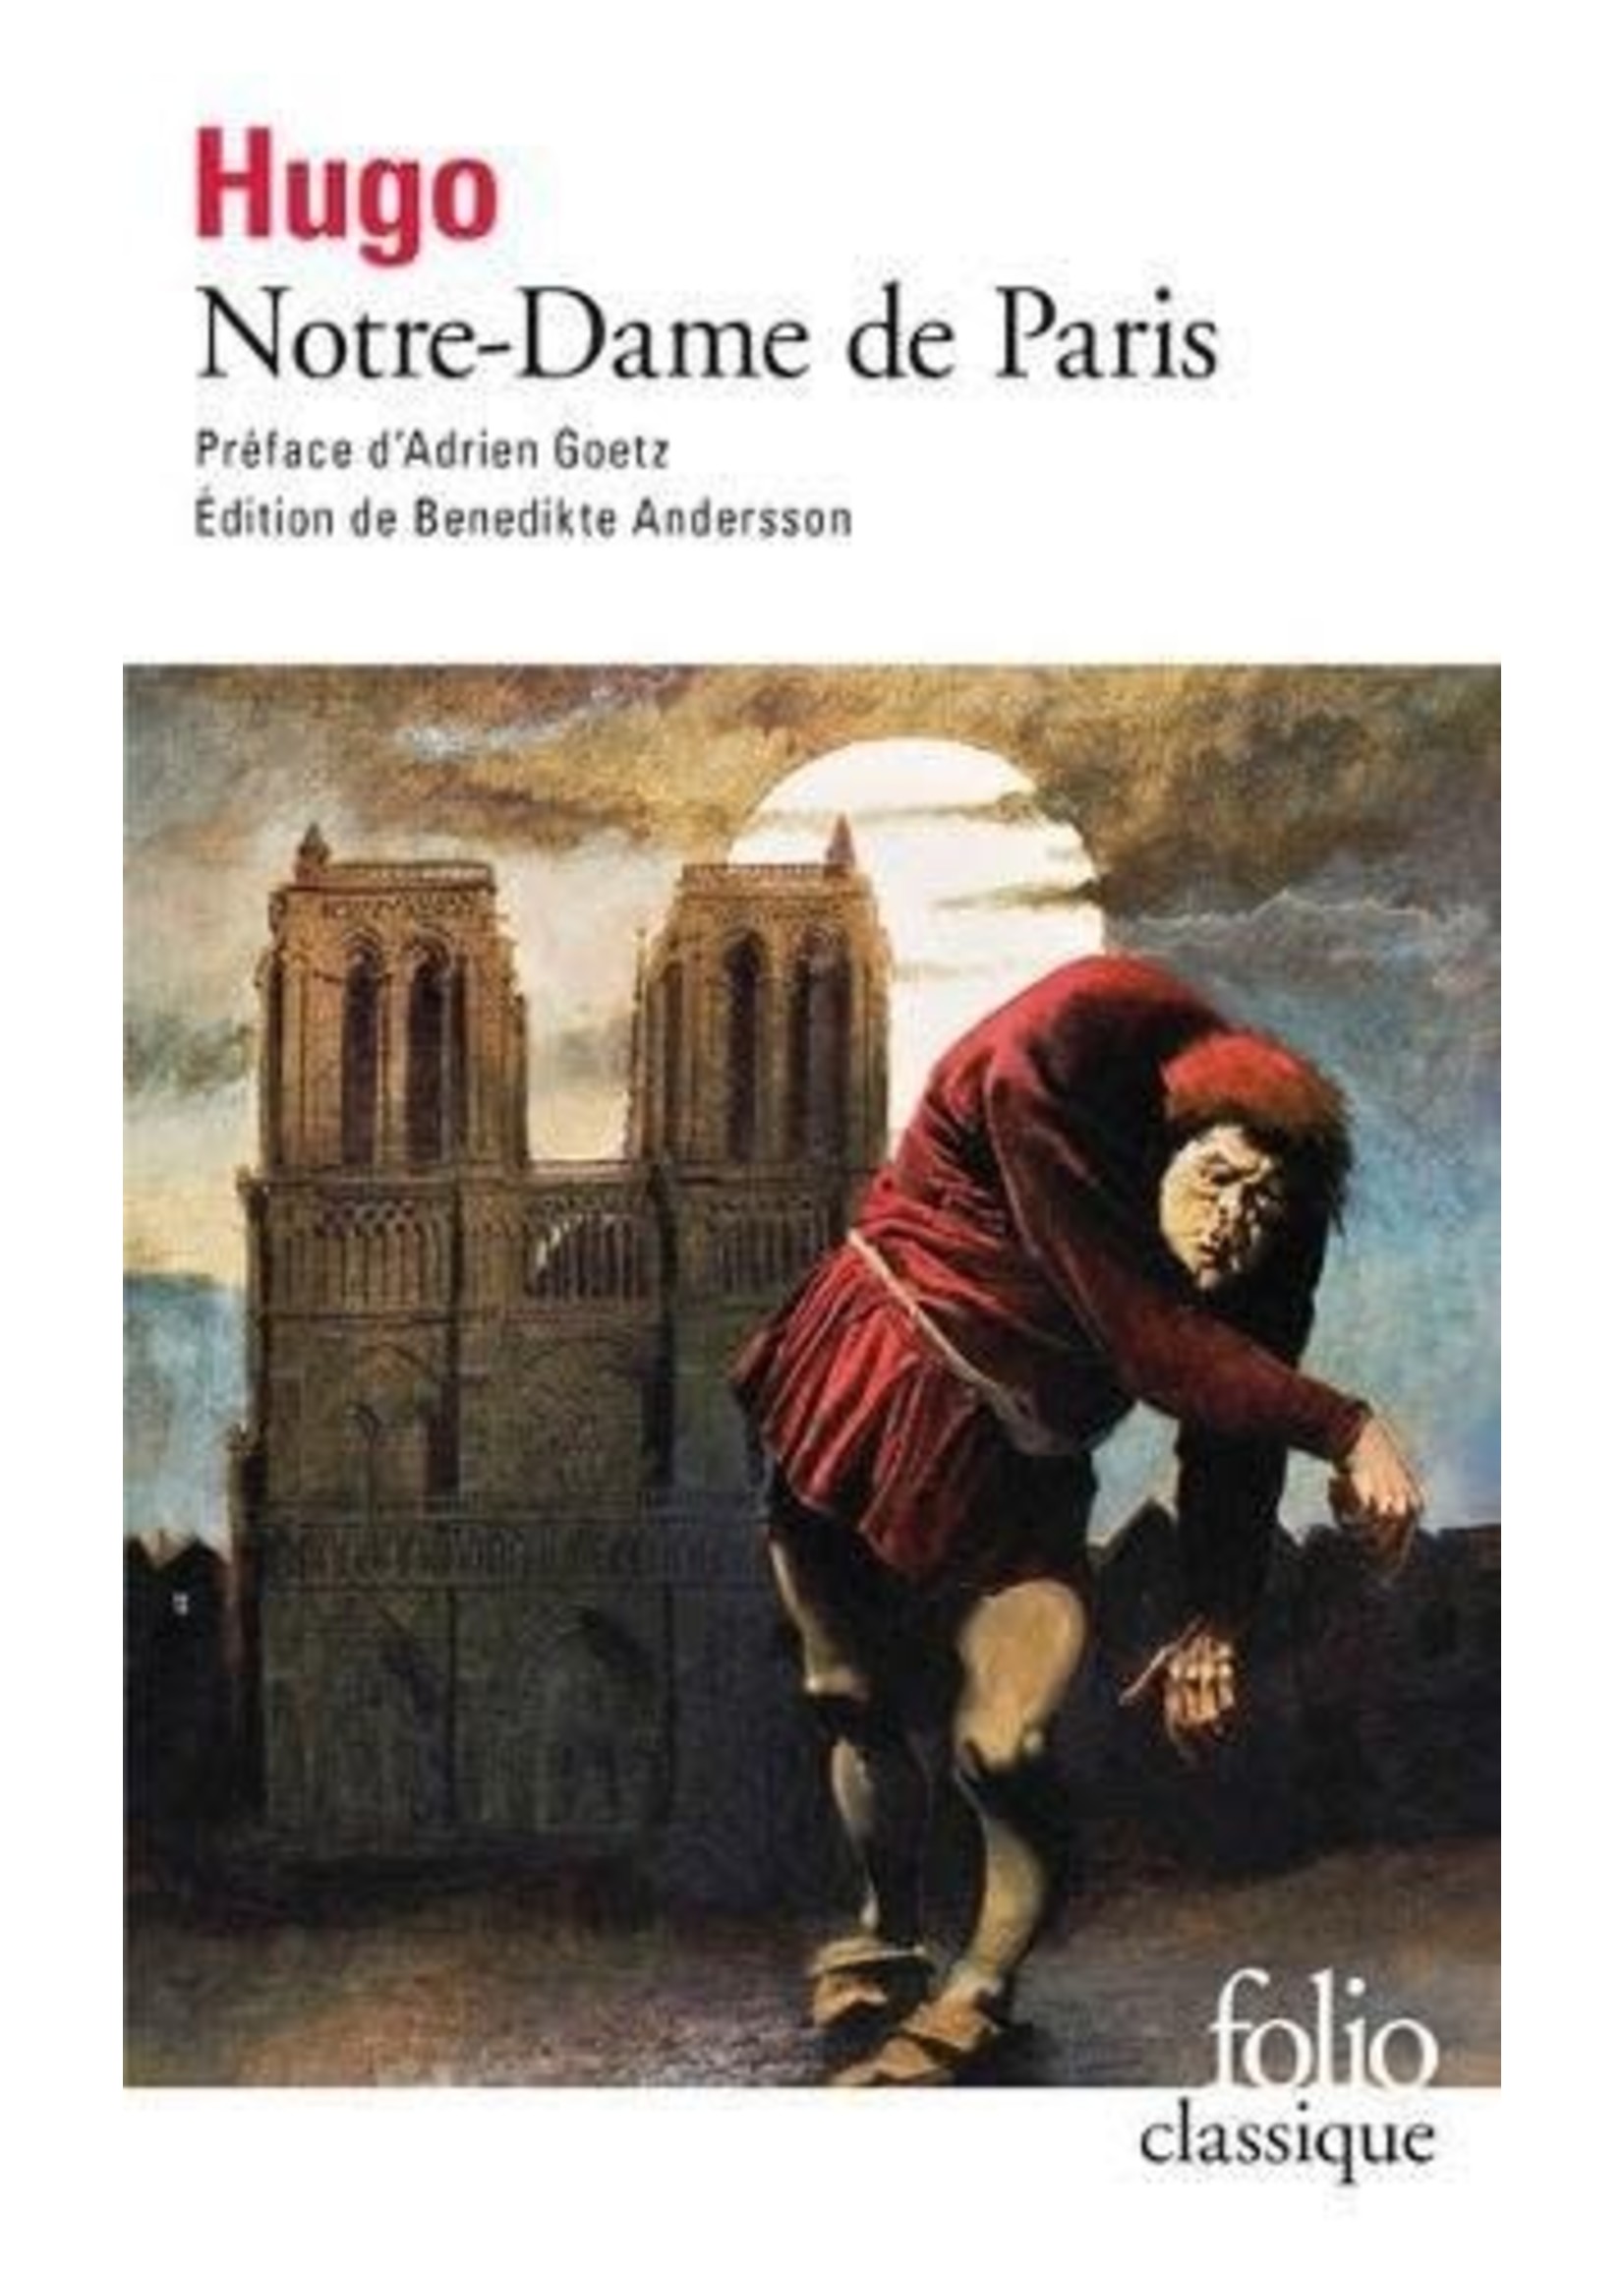 Notre-Dame de Paris by Victor Hugo